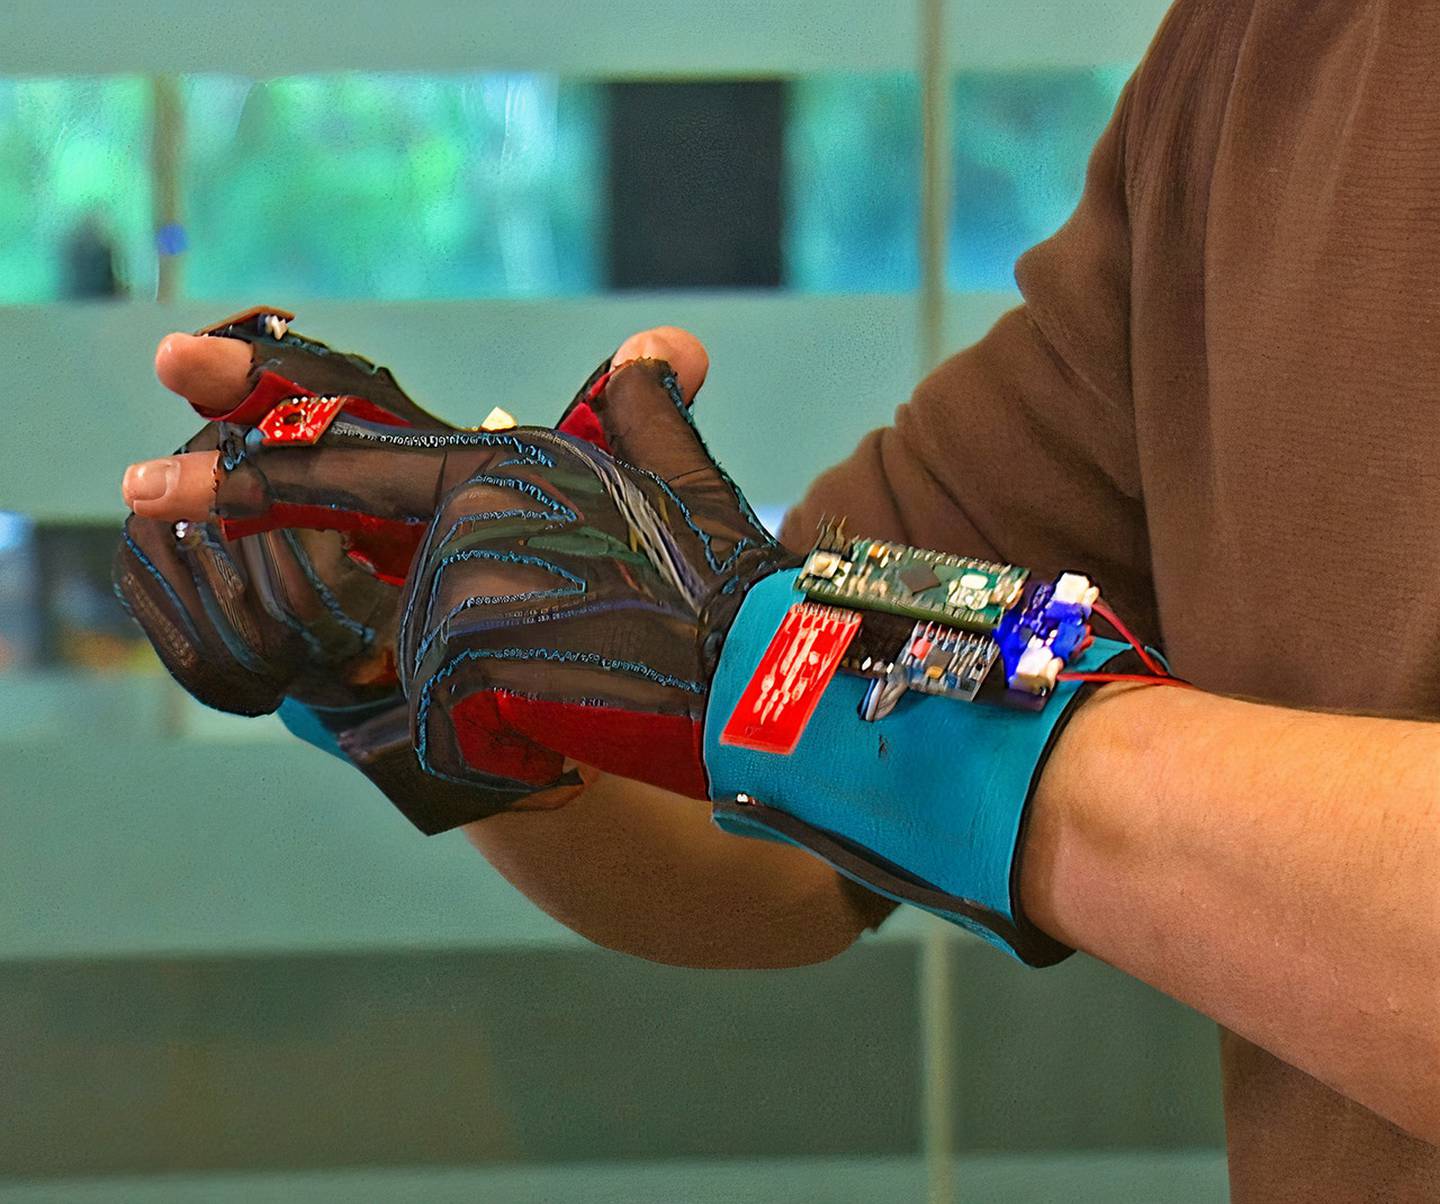 Recordamos la historia de SignAloud: unos guantes desarrollados por ingenieros del MIT que supuestamente ayudarían a la comunidad muda.